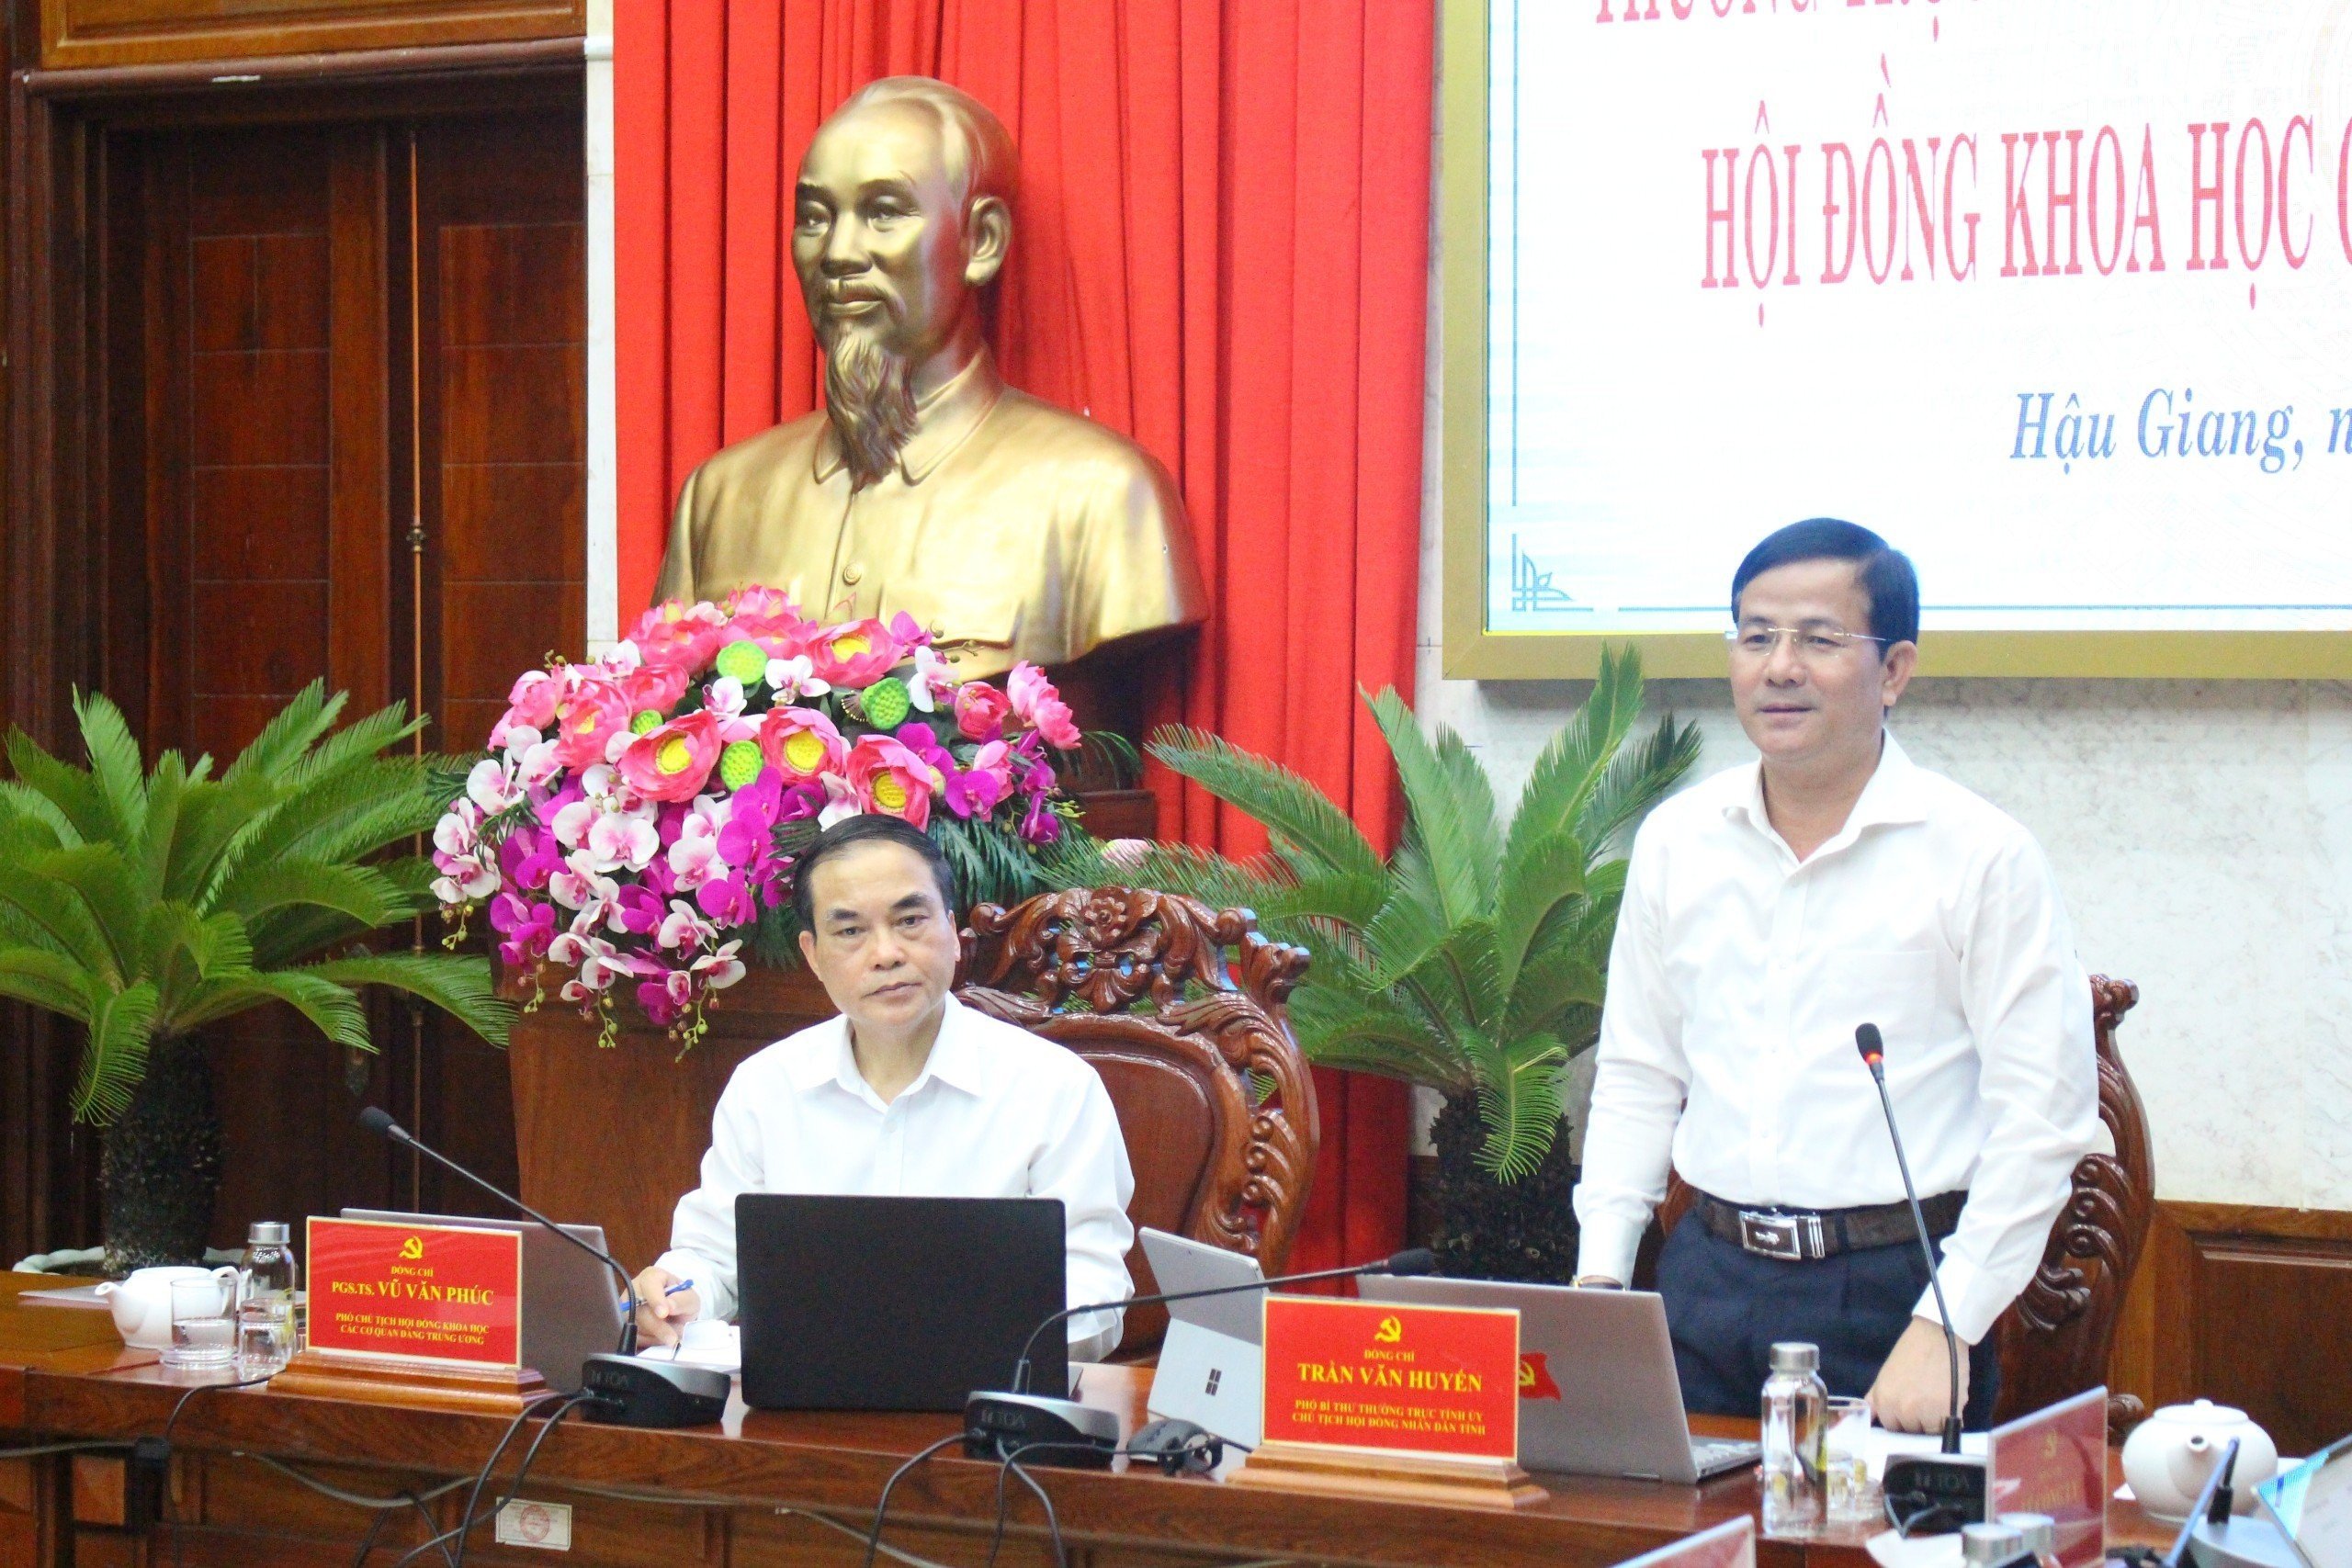 Đồng chí Trần Văn Huyến, Phó Bí thư Thường trực Tỉnh ủy, Chủ tịch HĐND tỉnh Hậu Giang phát biểu tại buổi làm việc.